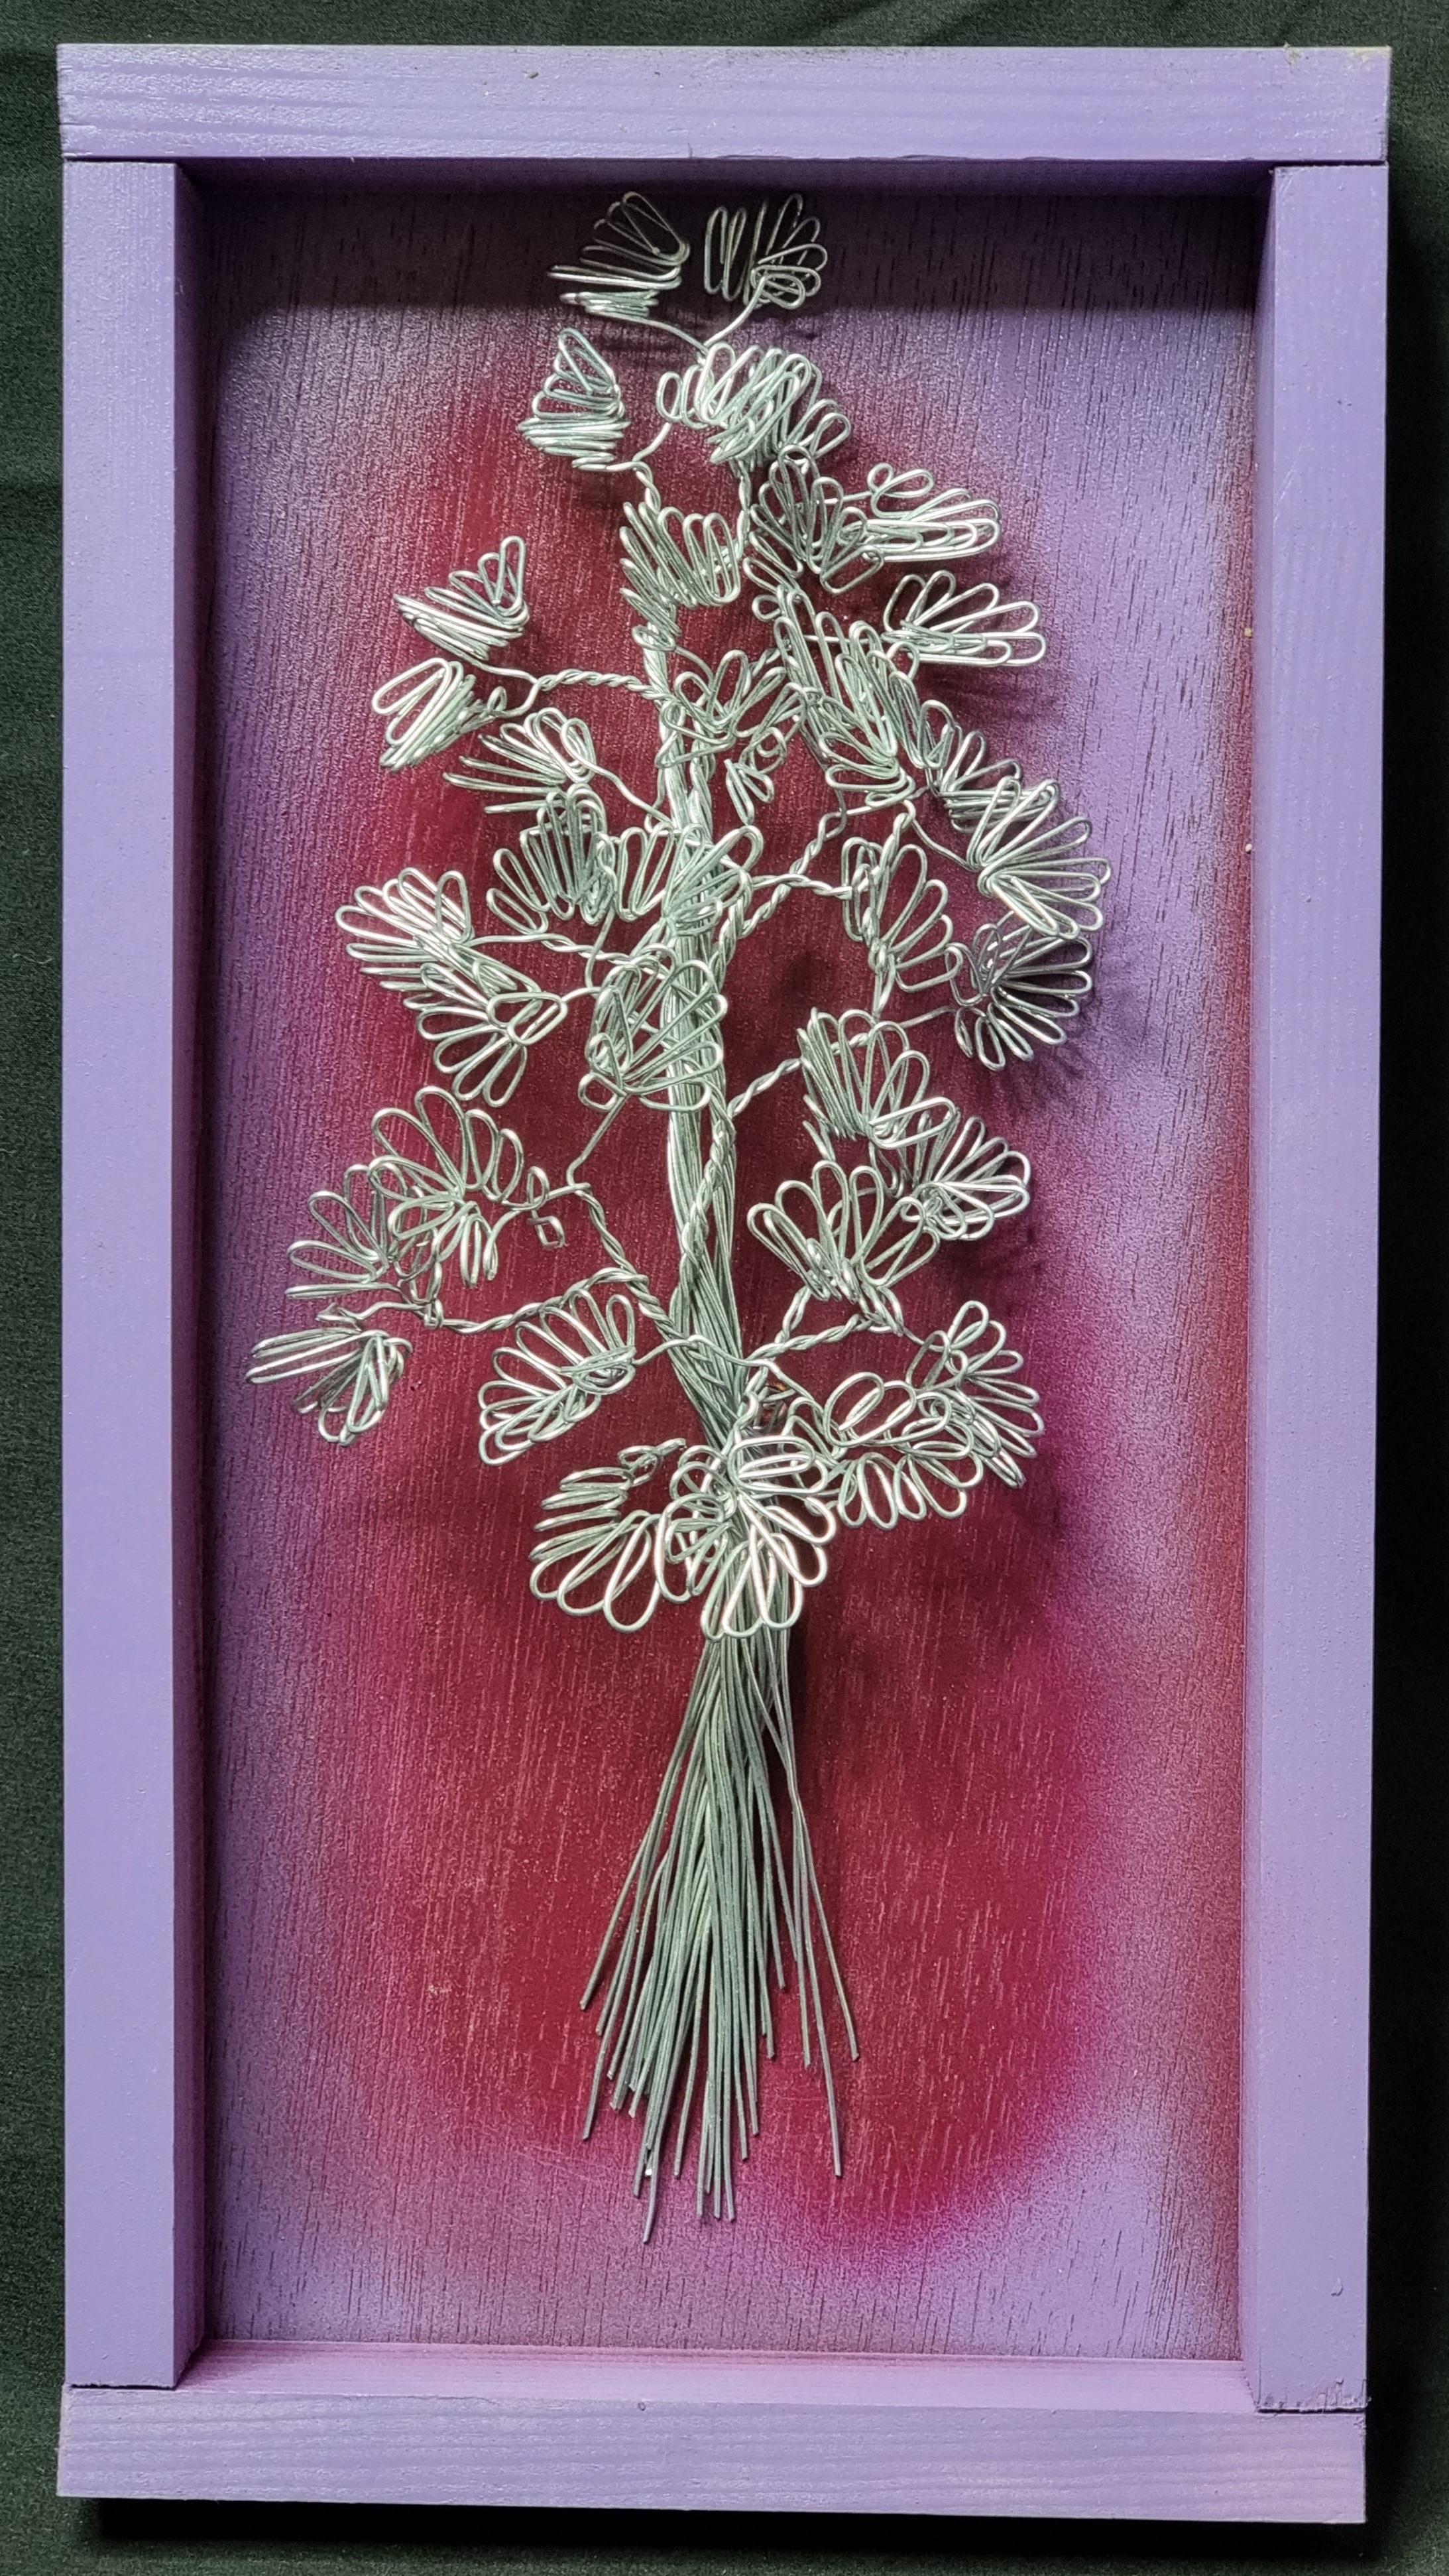 TABLEAU arbre en fer fleur marguerite DÉCORATION  EFFET 3D SUR FOND rouge violet ET CADRE violet FAIT MAIN